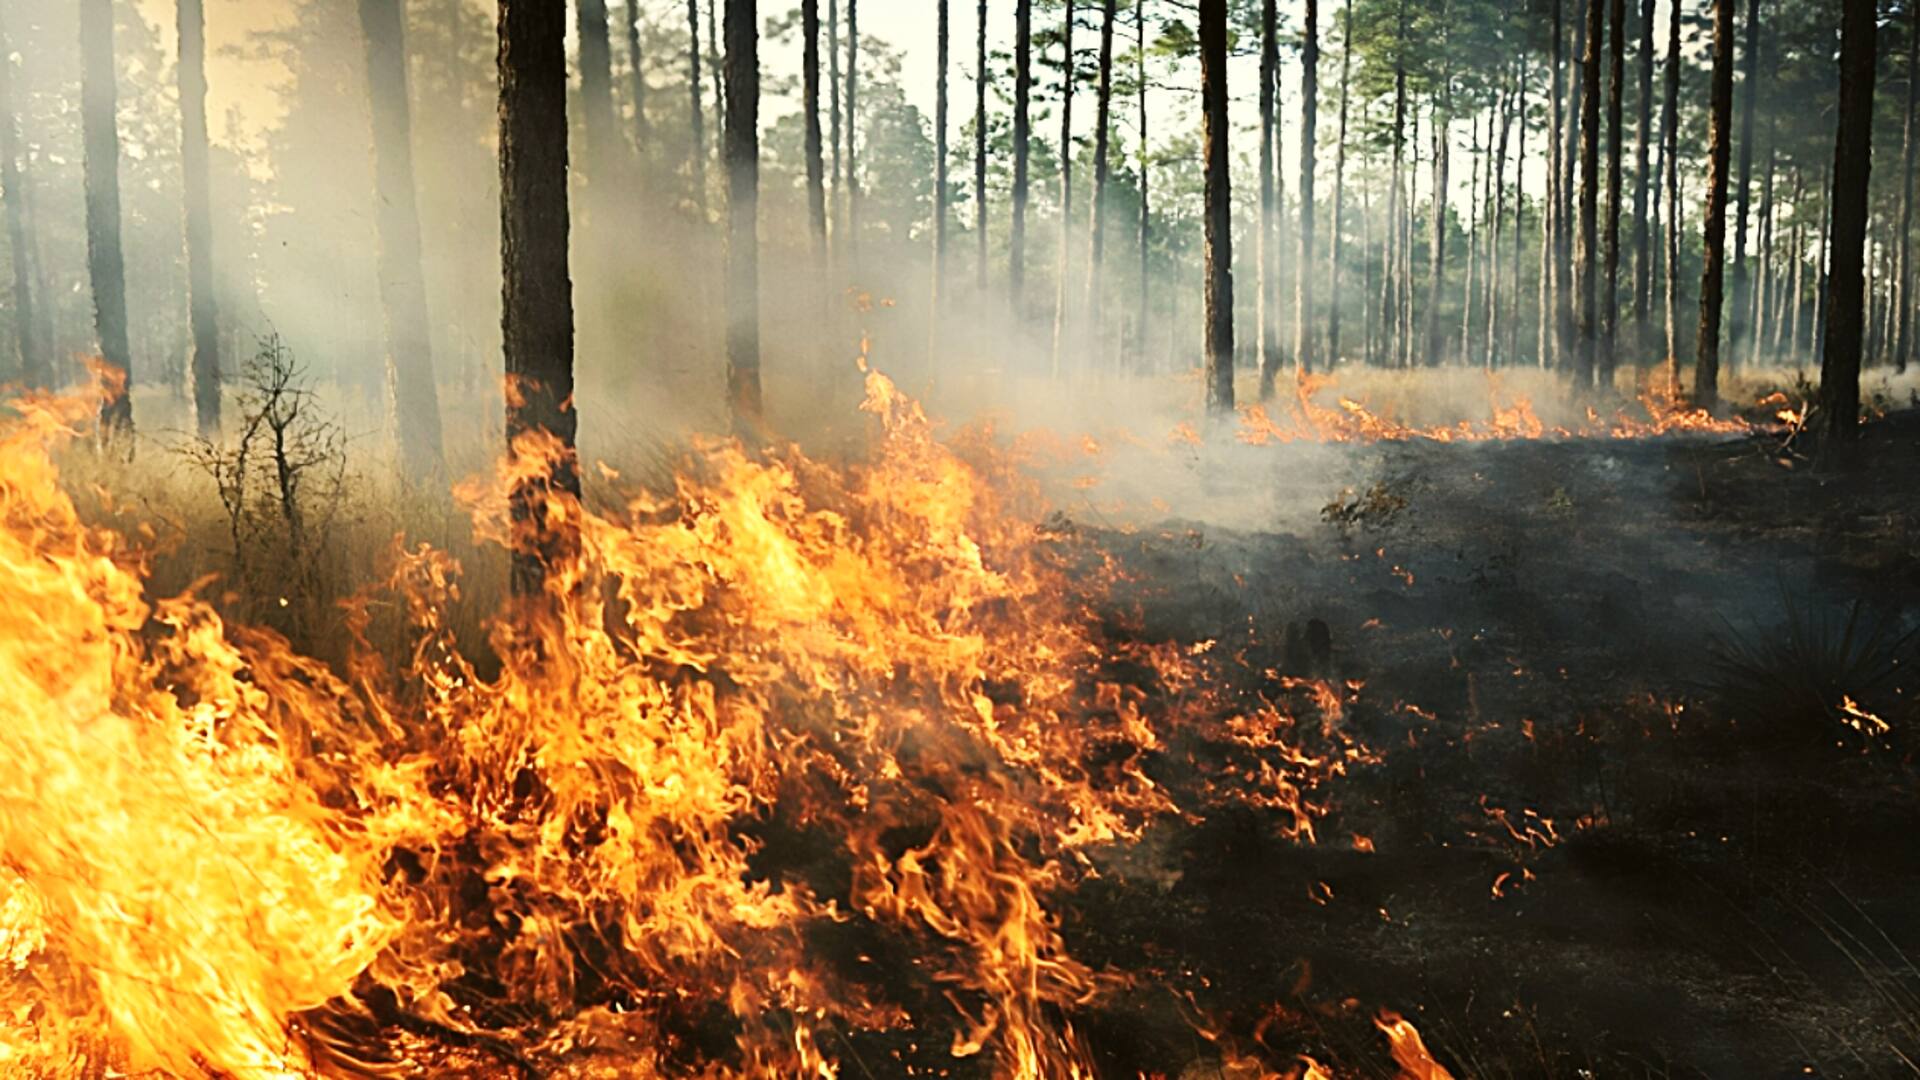 उत्तराखंड के जंगलों में फिर लगी आग, टिहरी के पास जंगल में कई पेड़ खाक